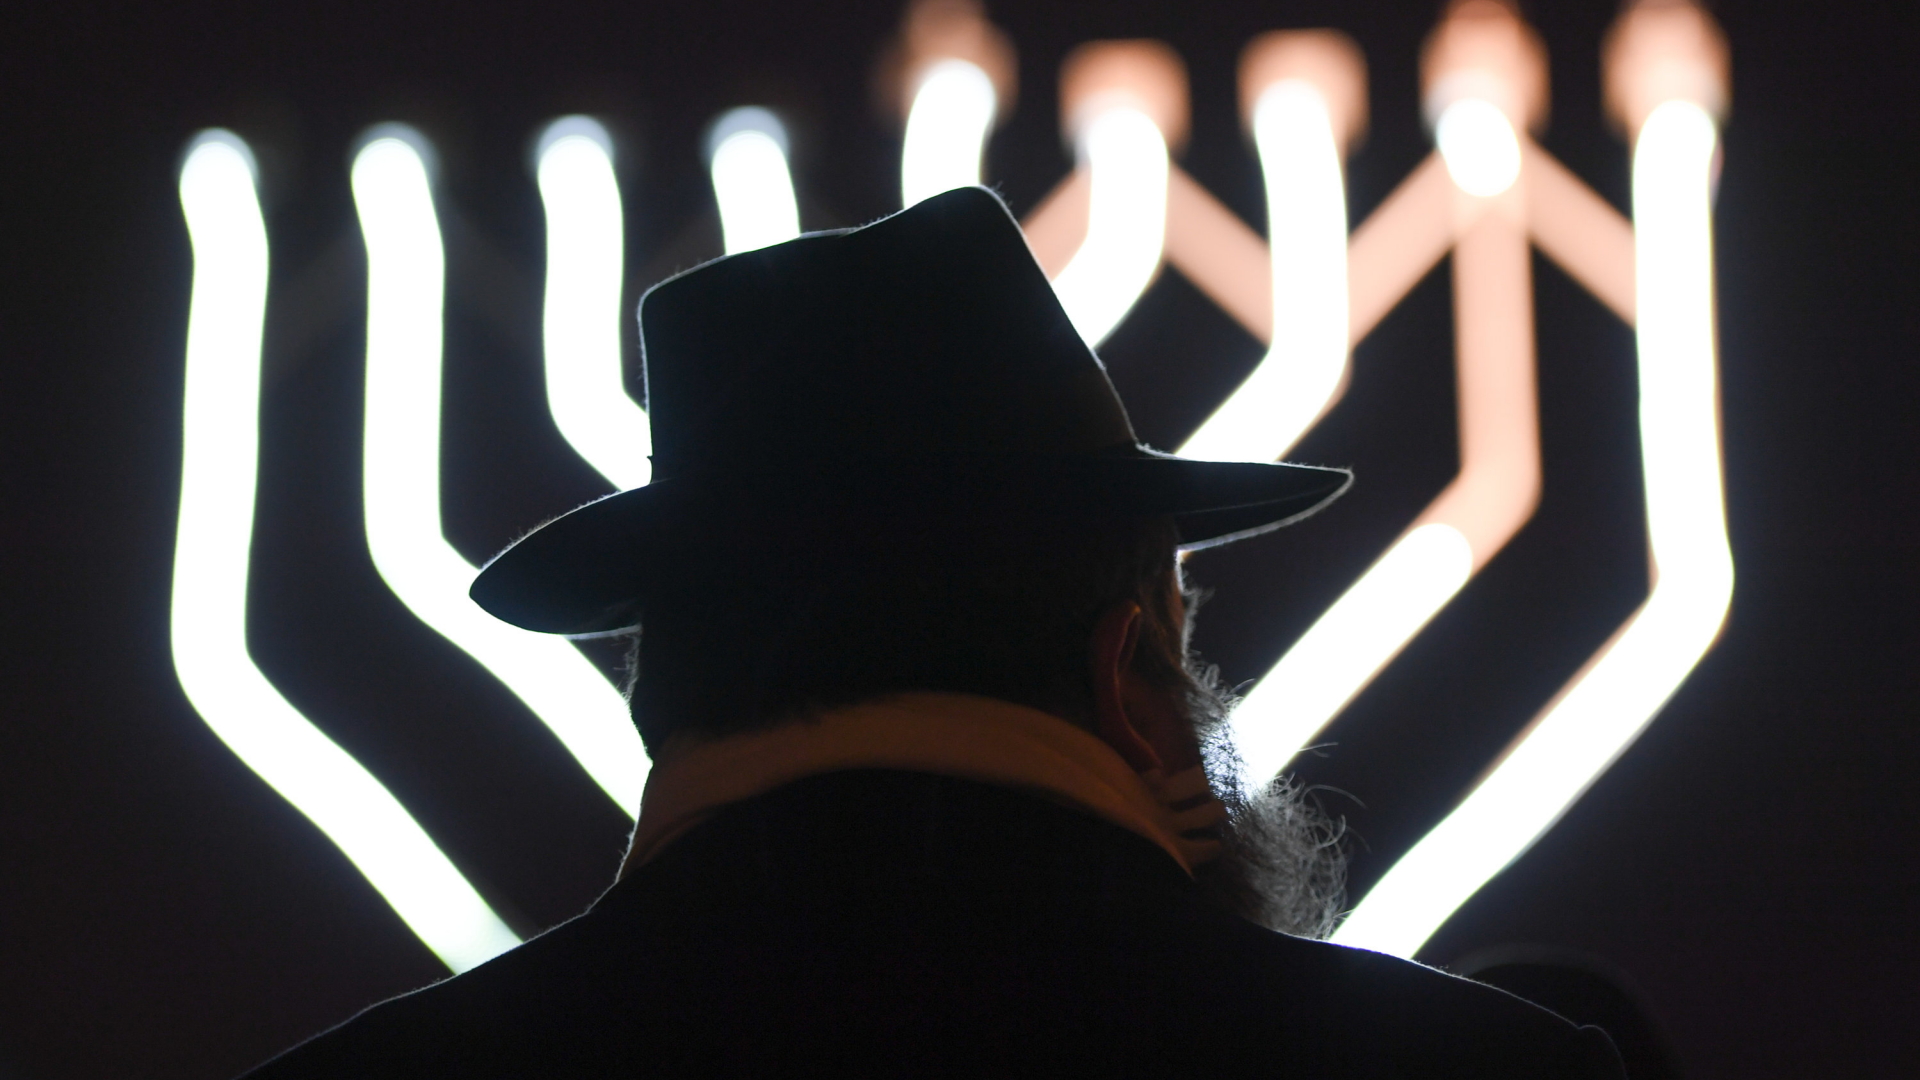 Teilnehmer am jüdischen Lichtfest in Frankfurt am Main | Bildquelle: dpa